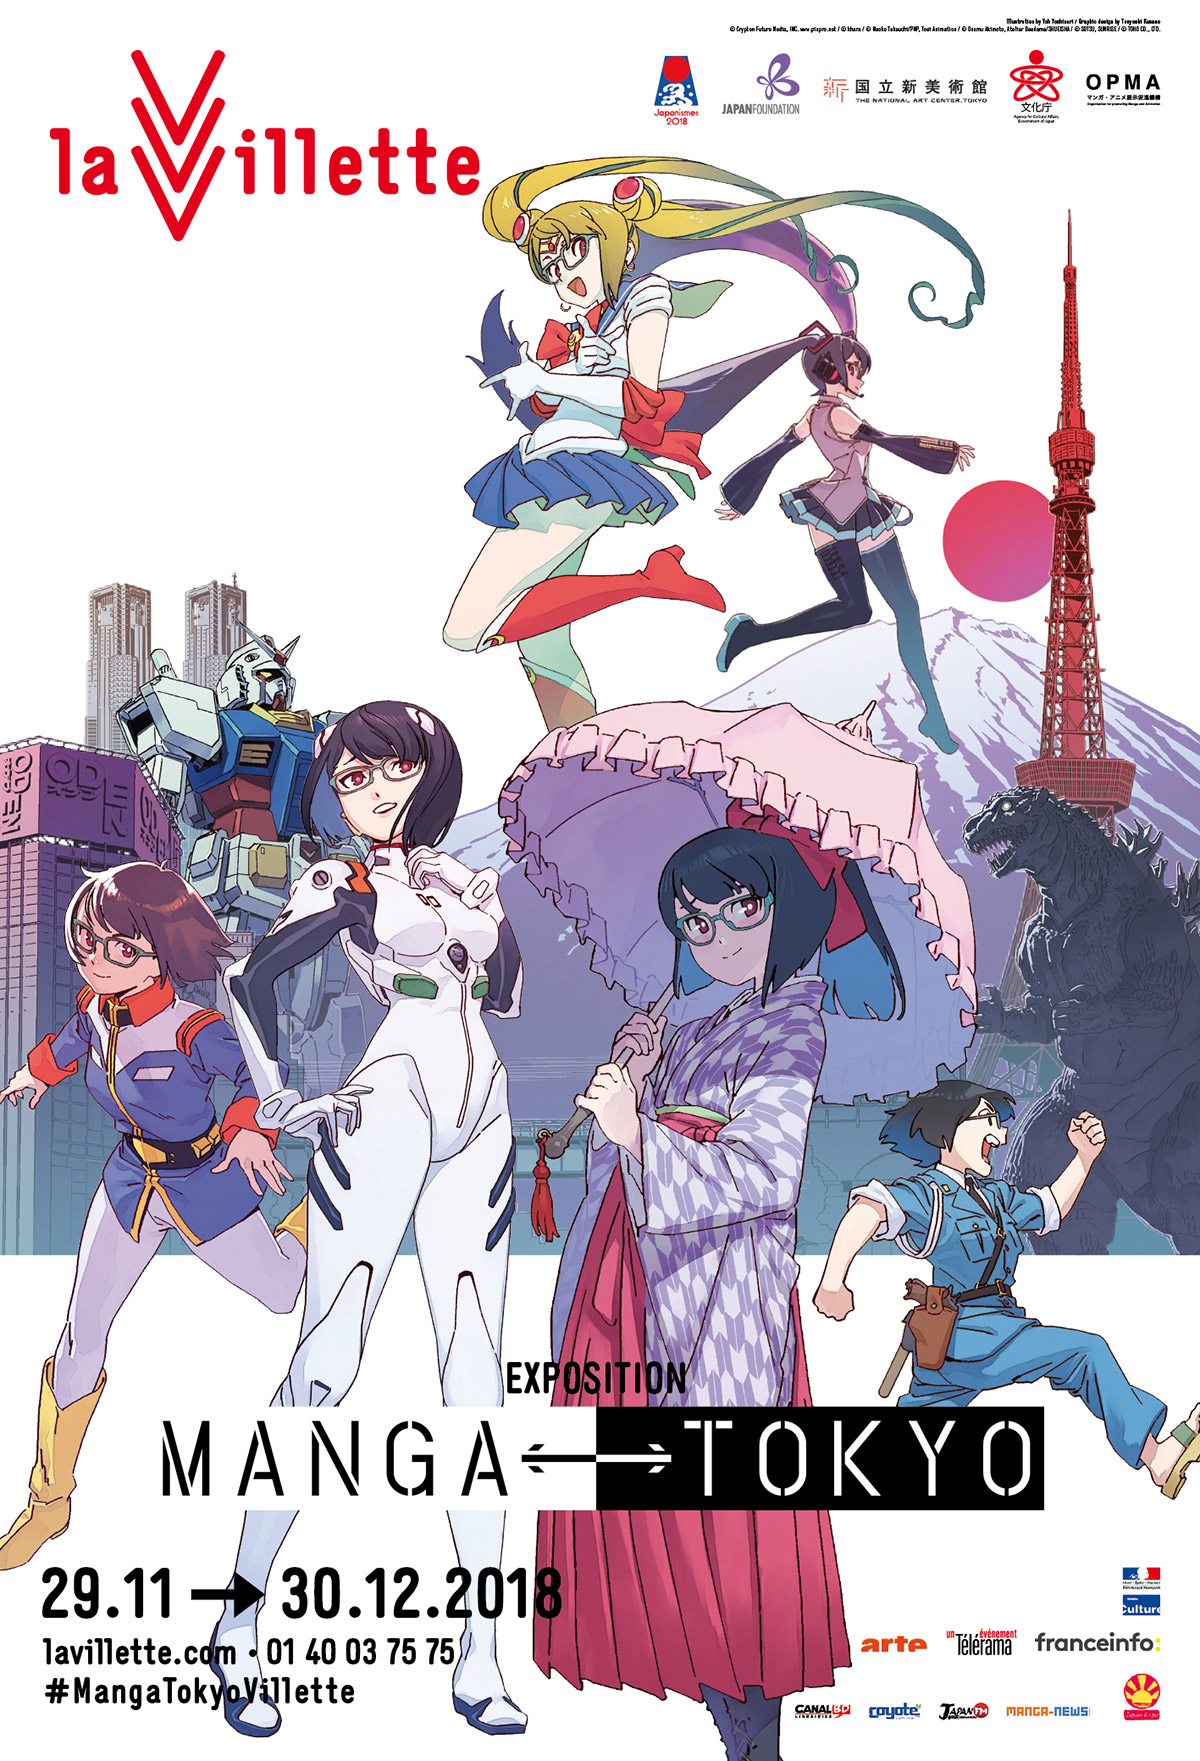 KonoSuba - Film  Anime-Sama - Streaming et catalogage d'animes et scans.